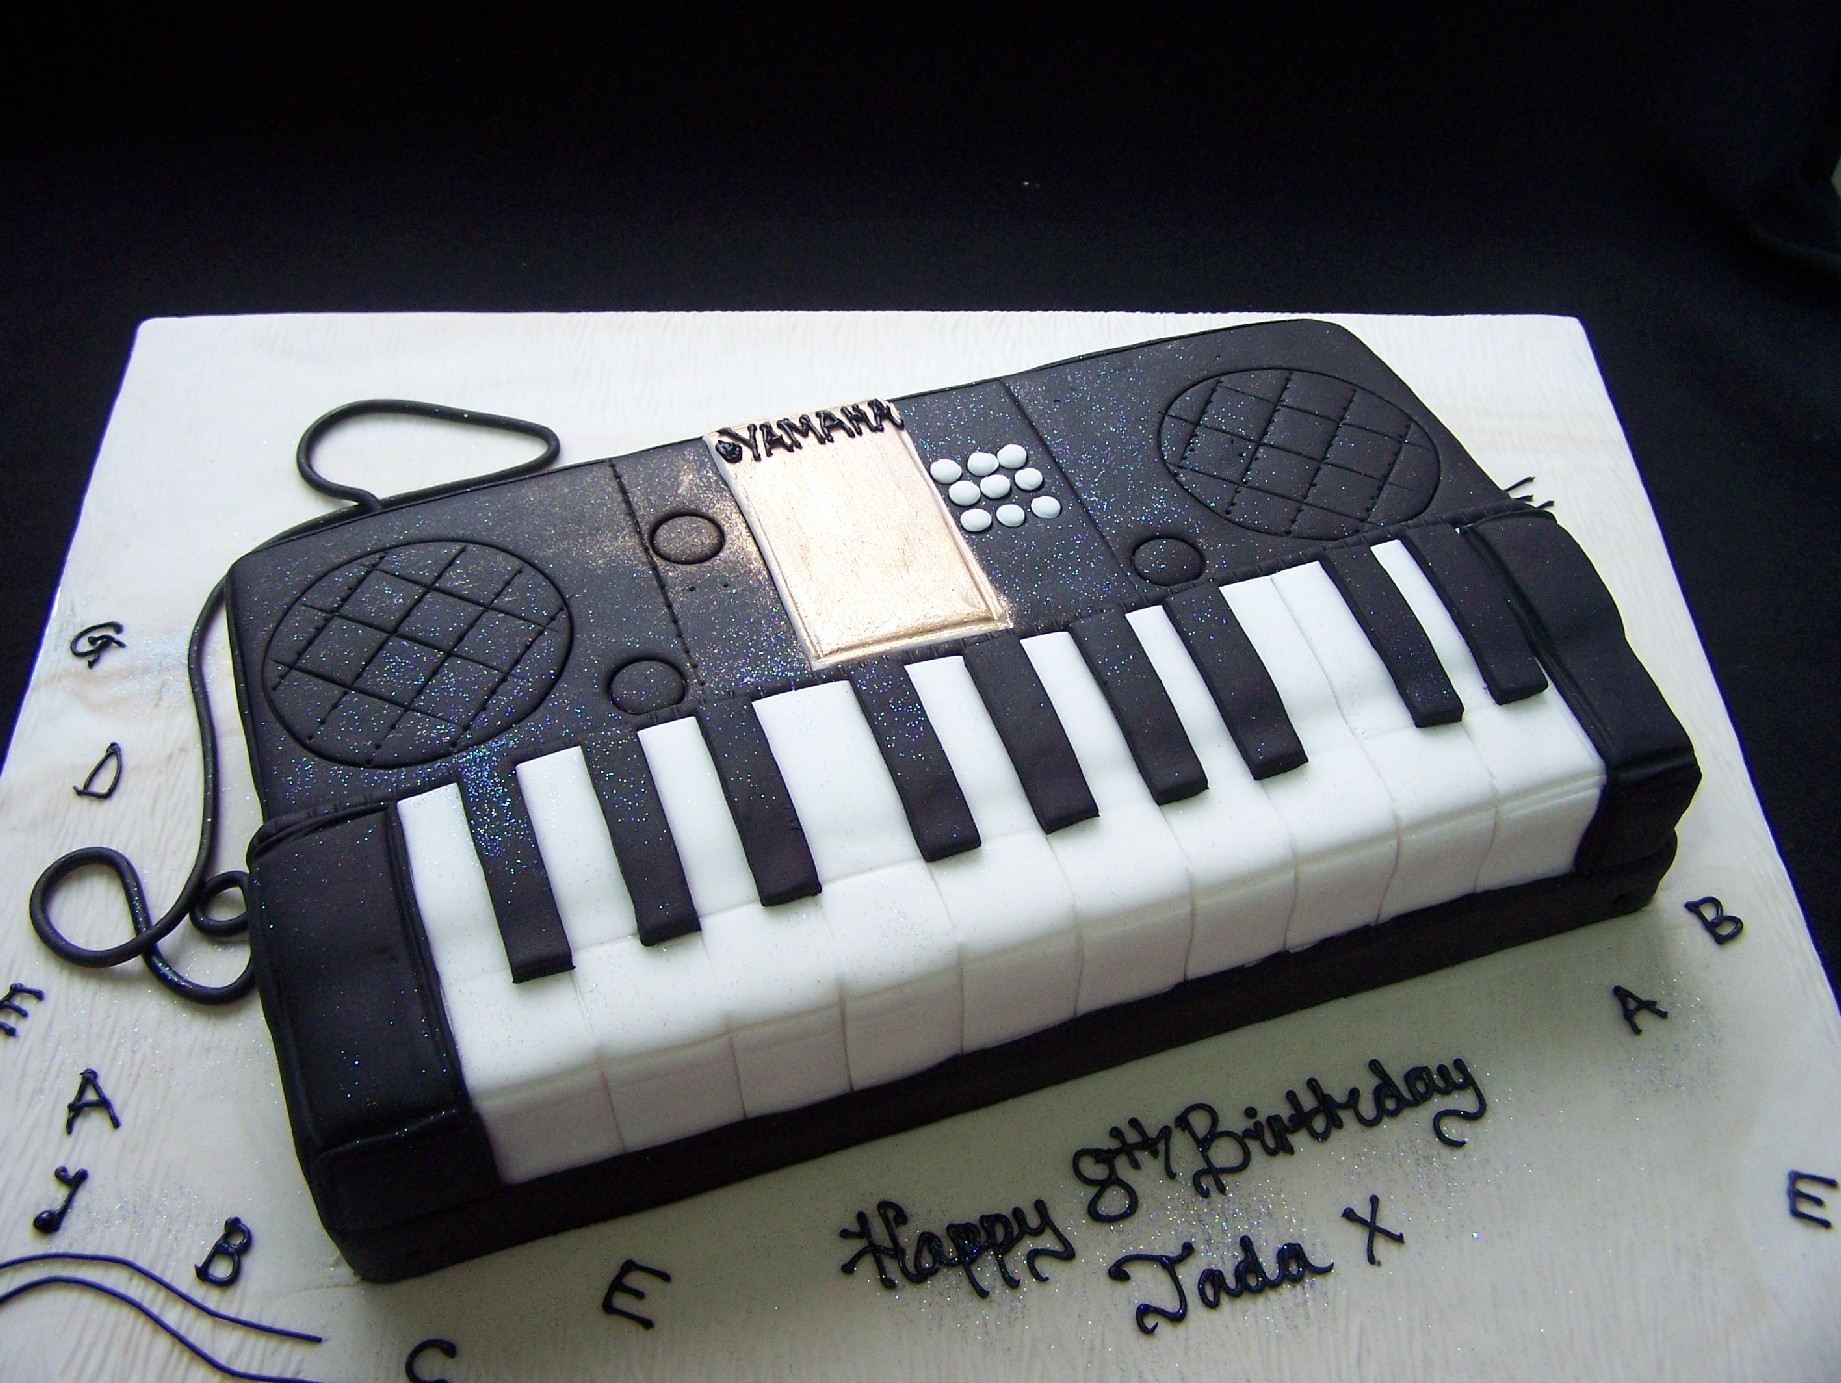 Keyboard Cake | Novelty Cakes